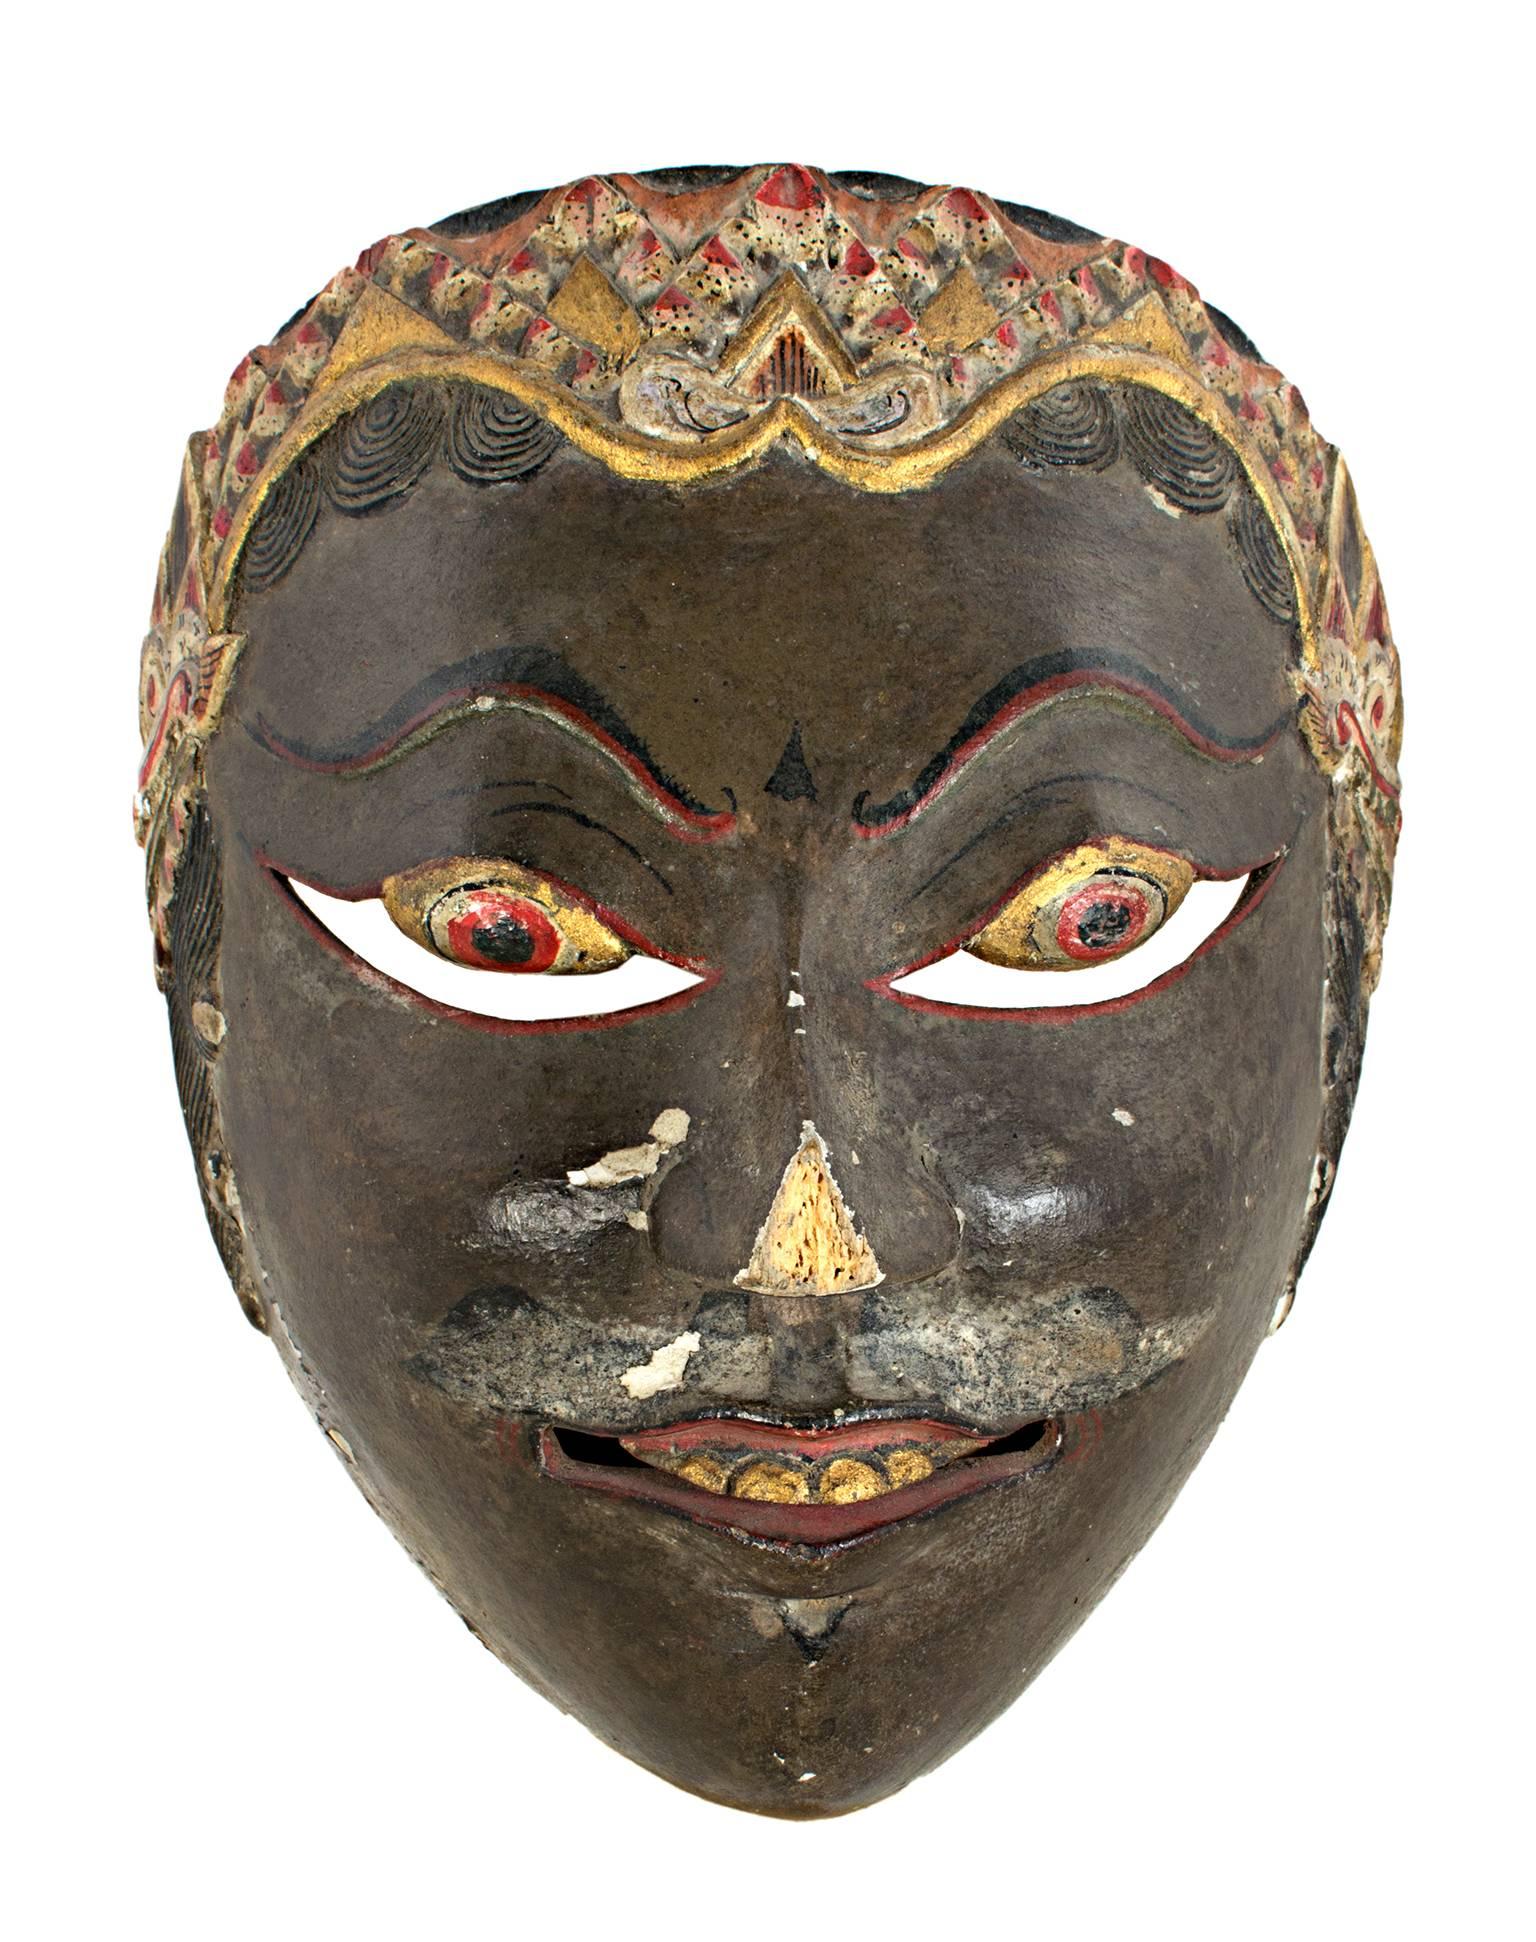 « Masque indonésien avec visage sombre et touches d'or », bois peint, 19ème siècle